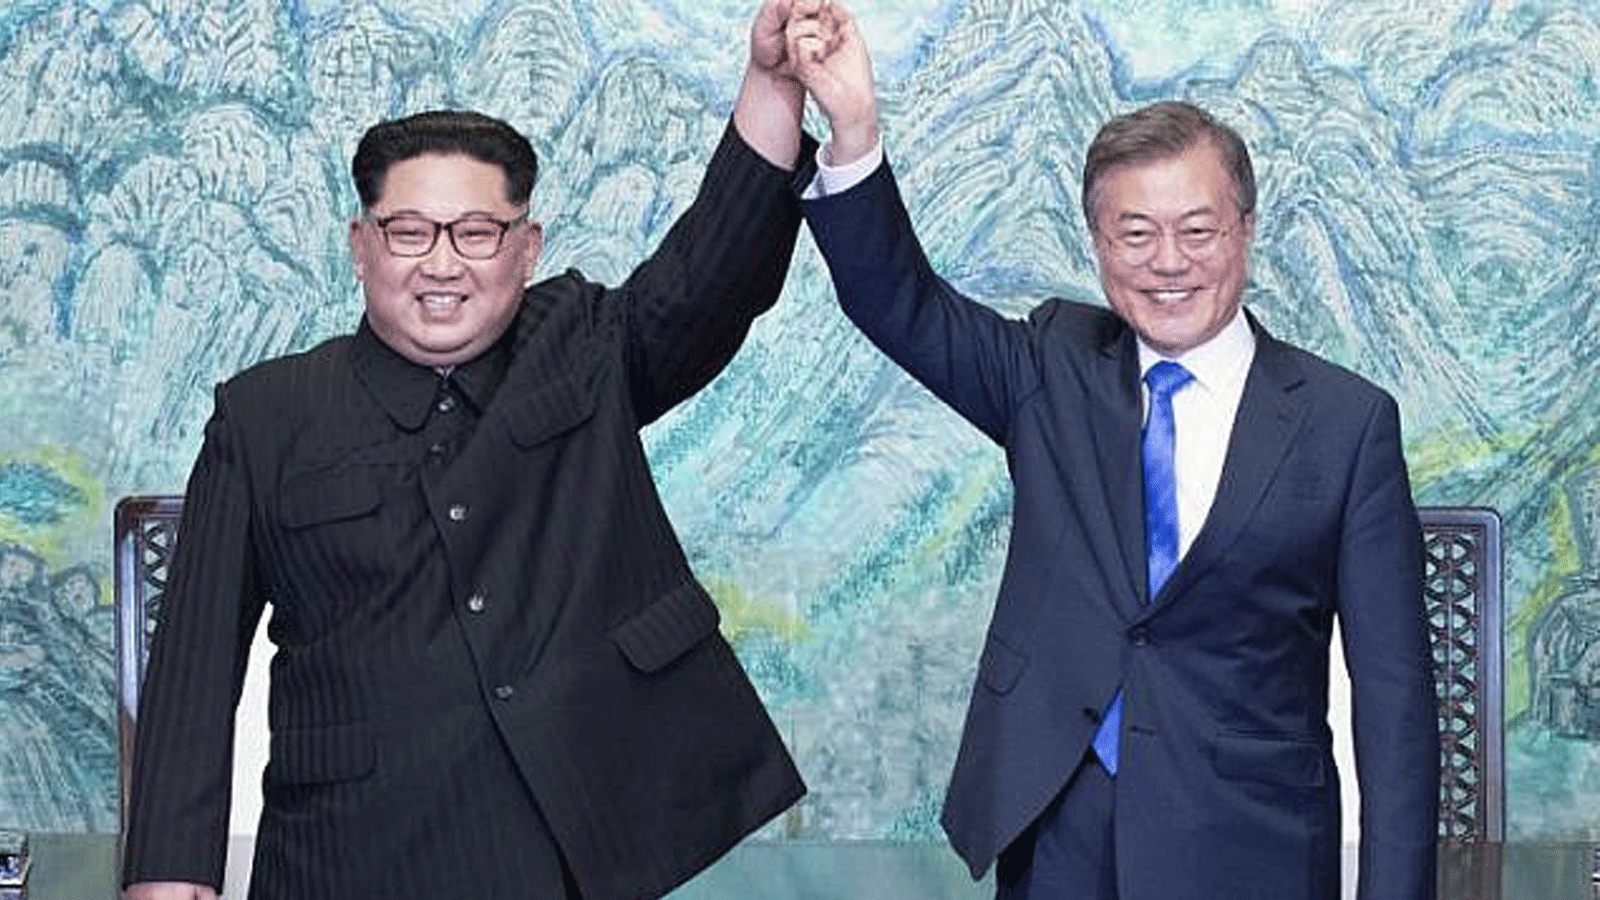 زعيم كوريا الشمالية كيم جونغ أون (إلى اليسار) ورئيس كوريا الجنوبية مون جاي إن (يمين) يرفعان أيديهما خلال حفل توقيع قرب نهاية قمتهما التاريخية في قرية الهدنة بانمونجوم في 27 نيسان/ أبريل 2018